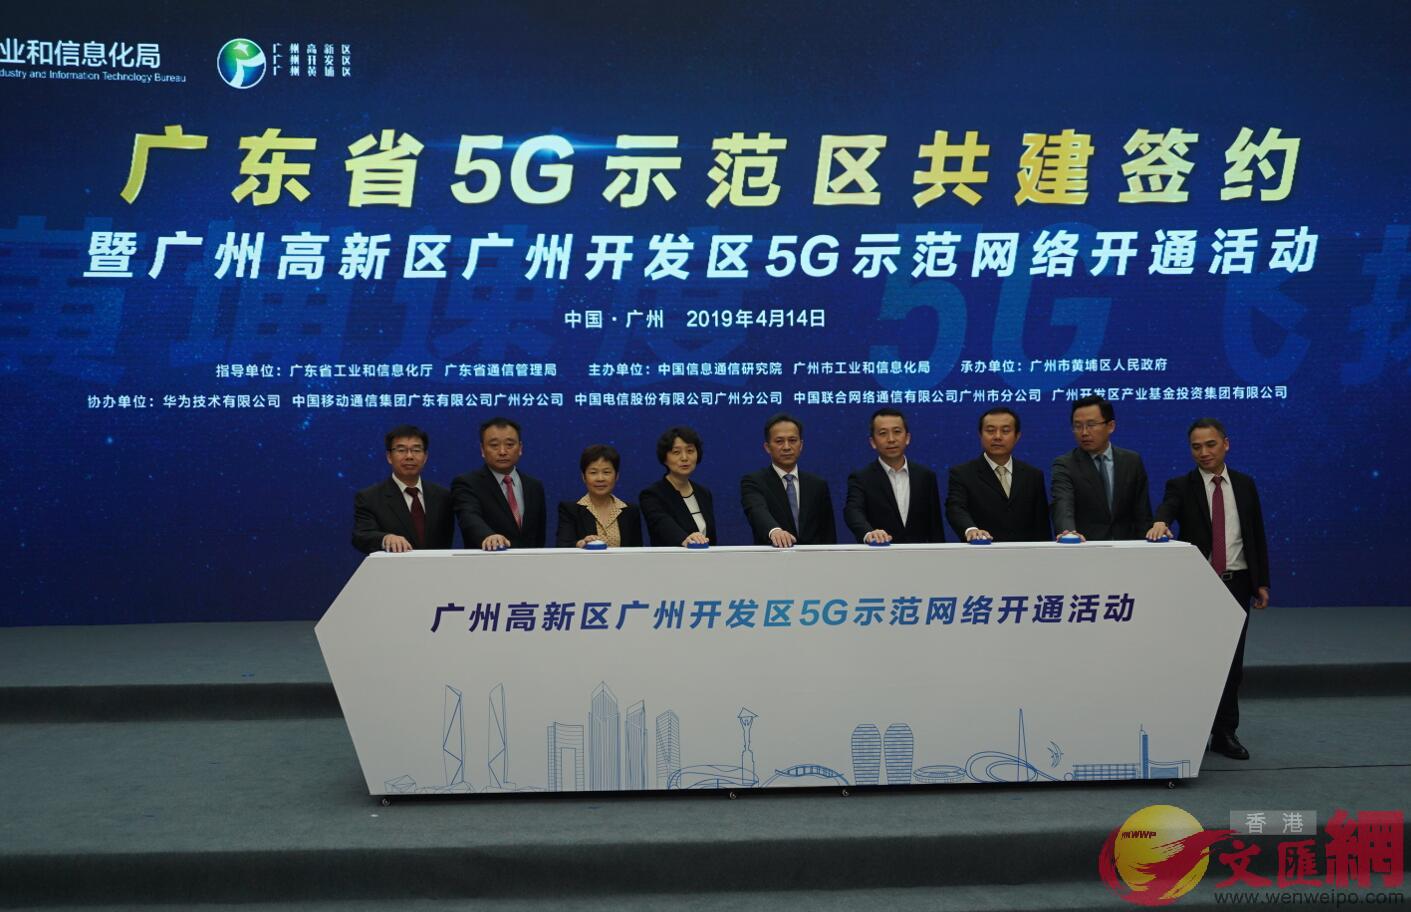 廣東省5G示範區共建簽約在廣州開發區舉行 ]敖敏輝攝^